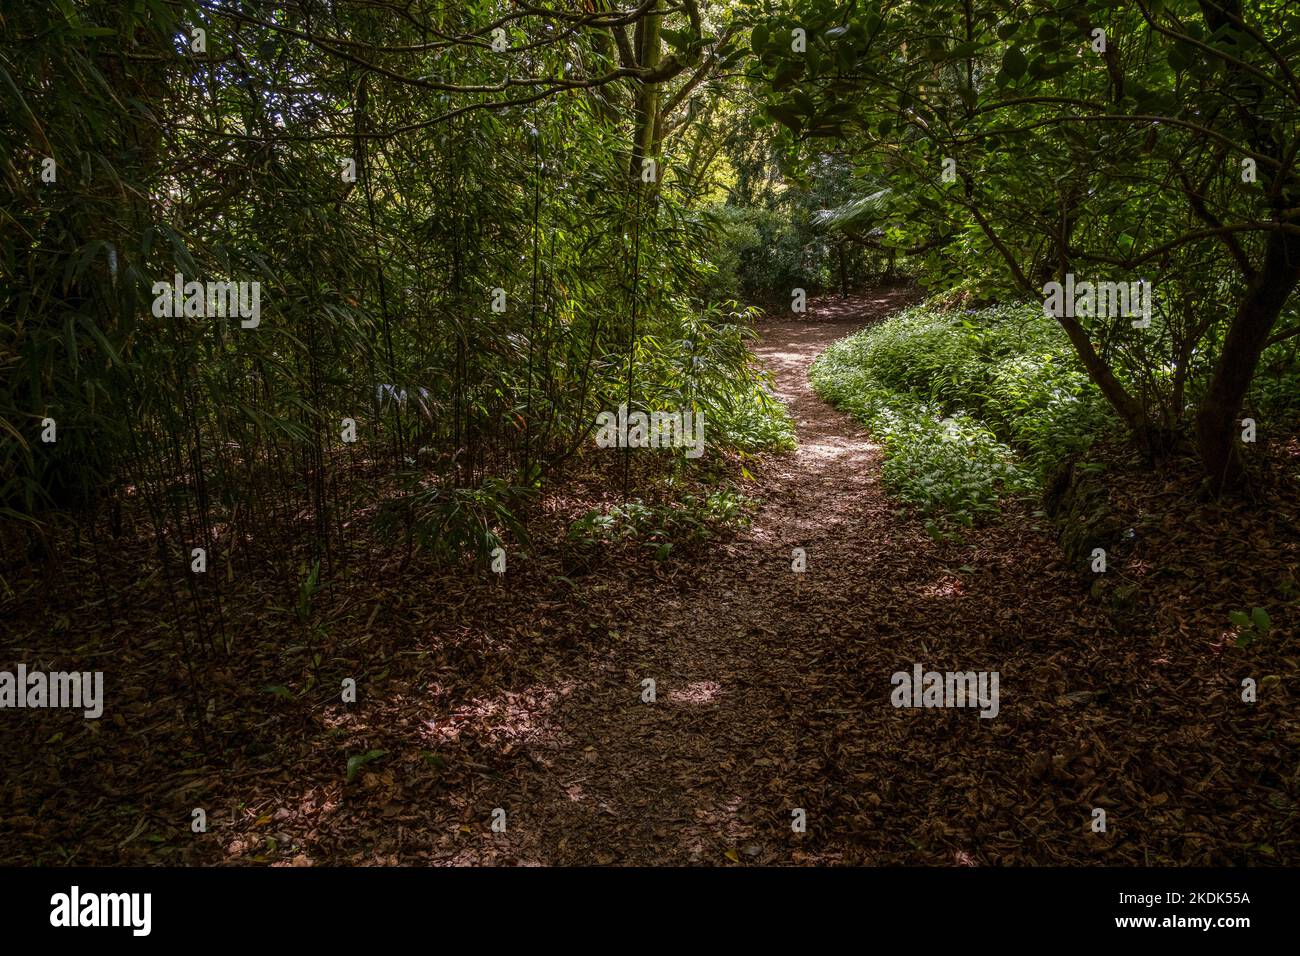 Un sentier à travers le jardin sauvage subtropical Penjjick à Cornwall. Penjerrick Garden est reconnu comme le véritable jardin de la jungle de Cornmurals en Angleterre Banque D'Images